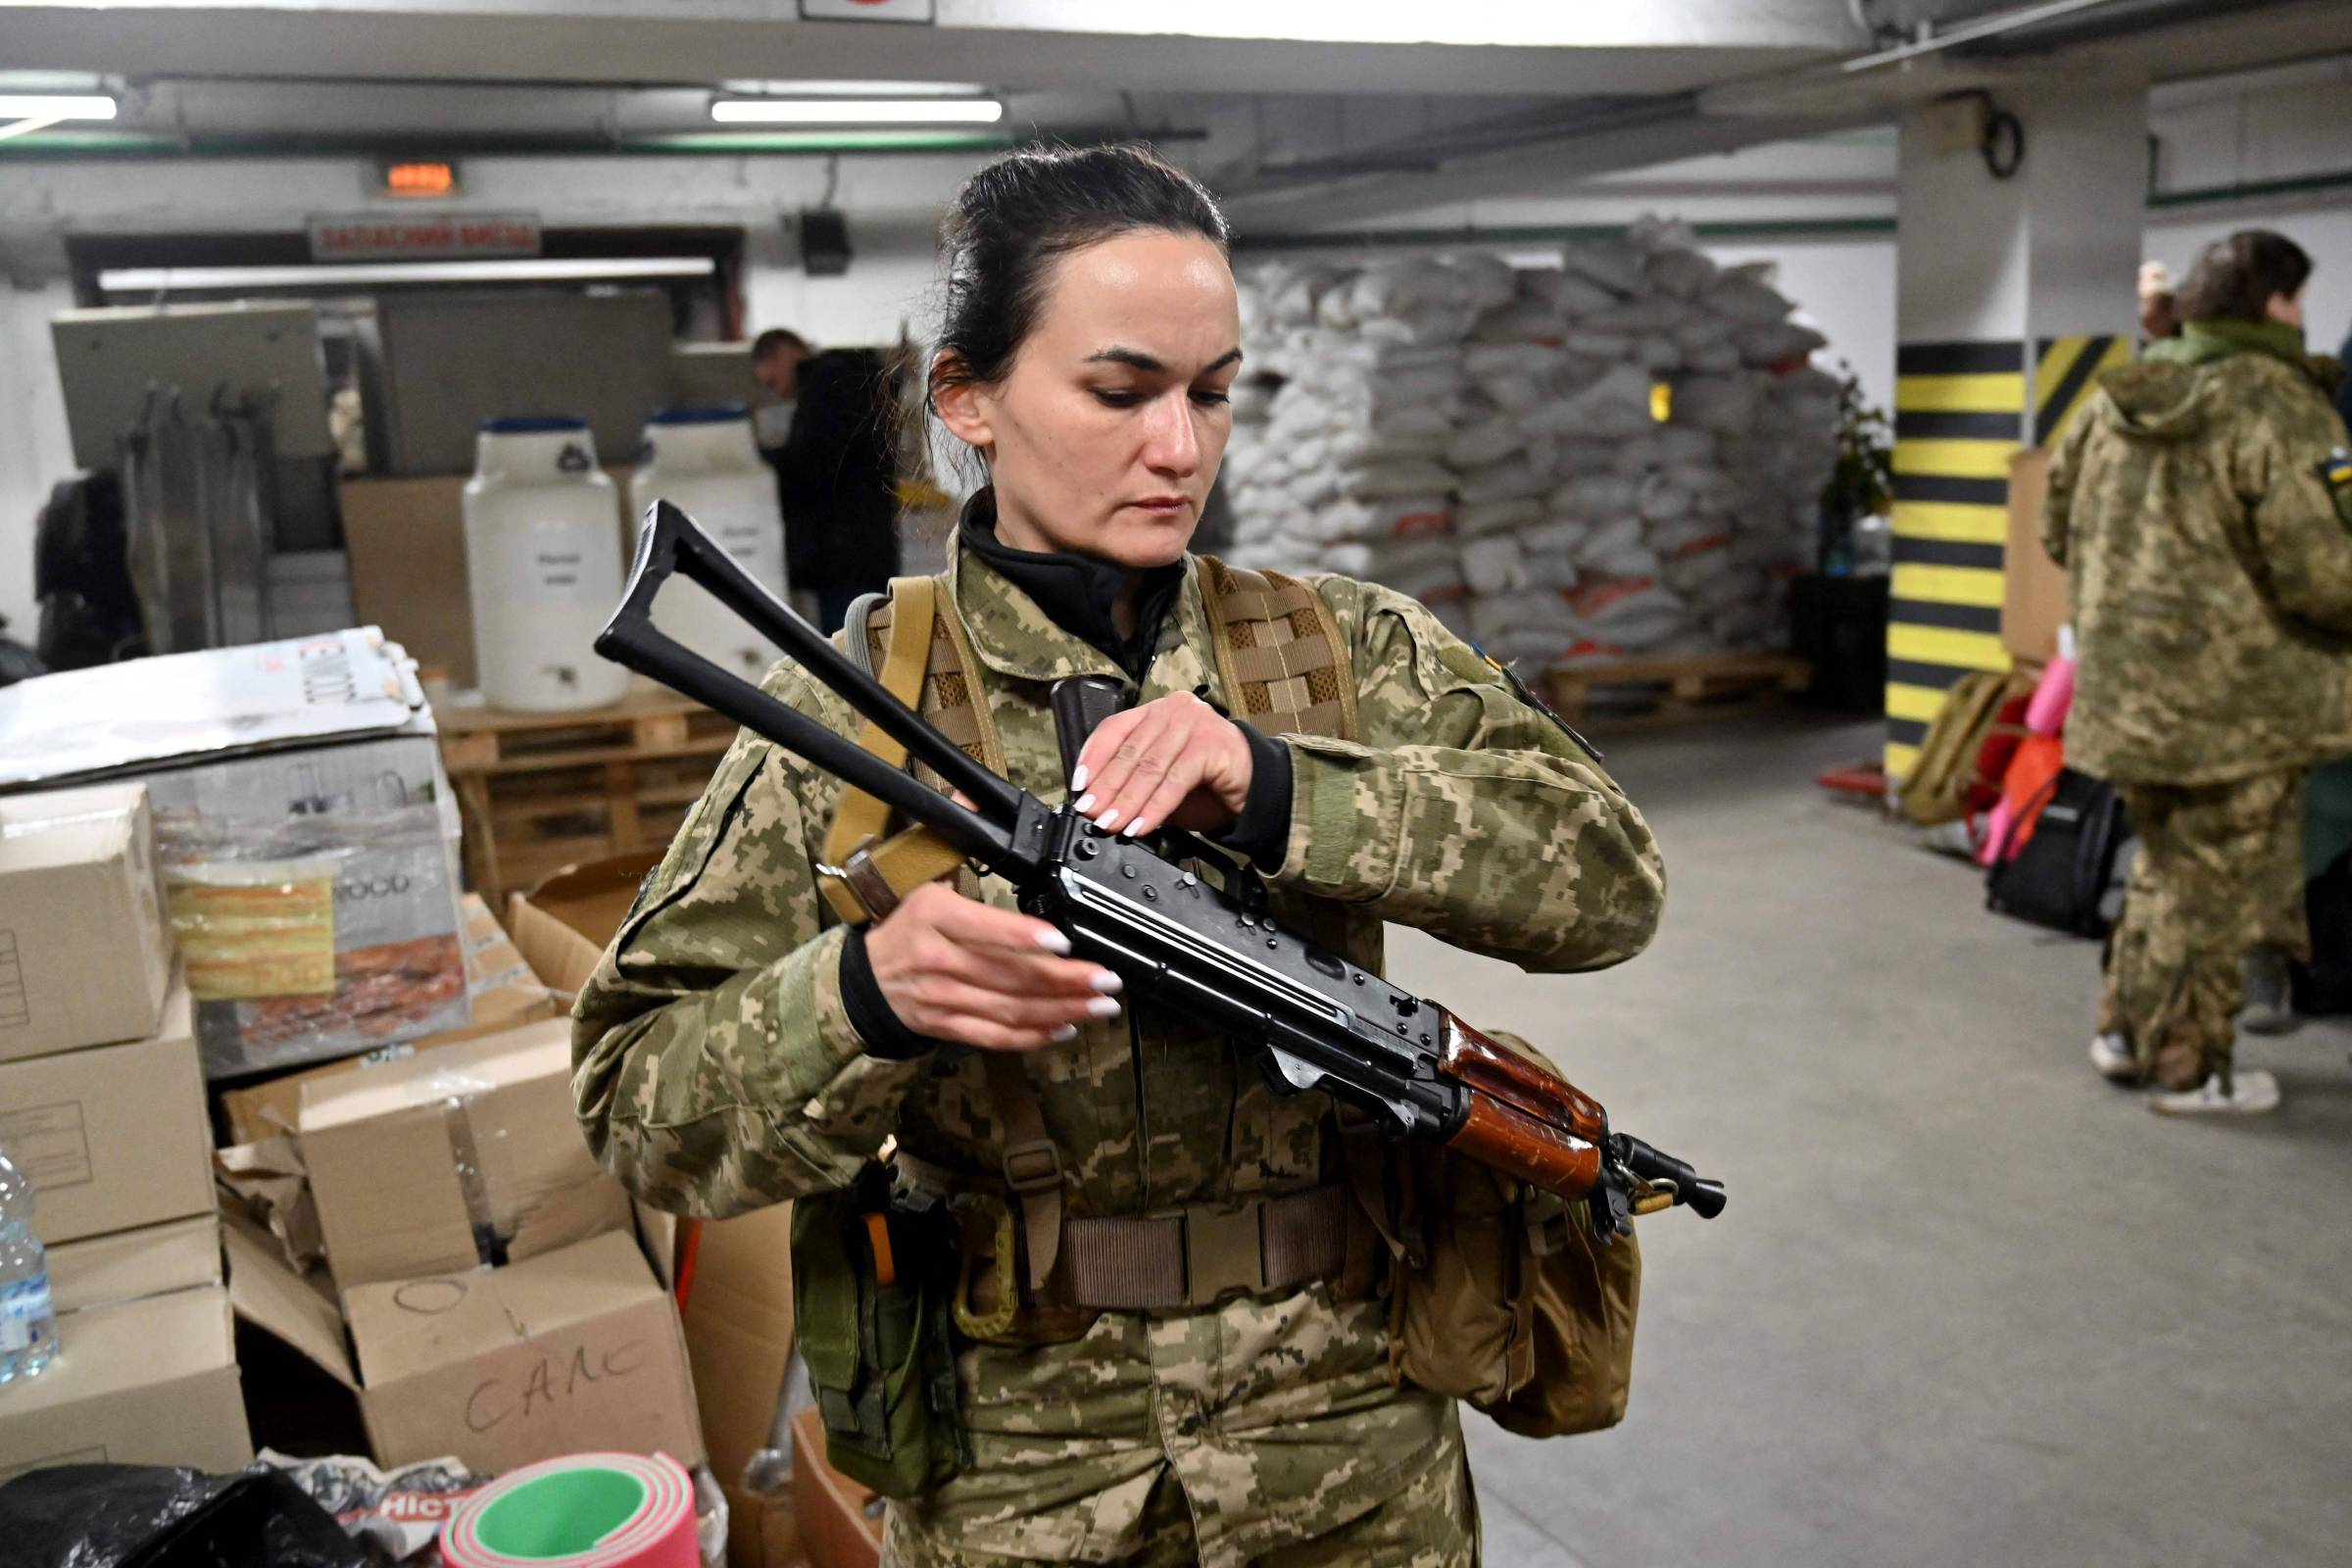 Mulheres ucranianas, antes vetadas no Exército, combatem russos na linha de frente - 12/03/2022 - Mundo